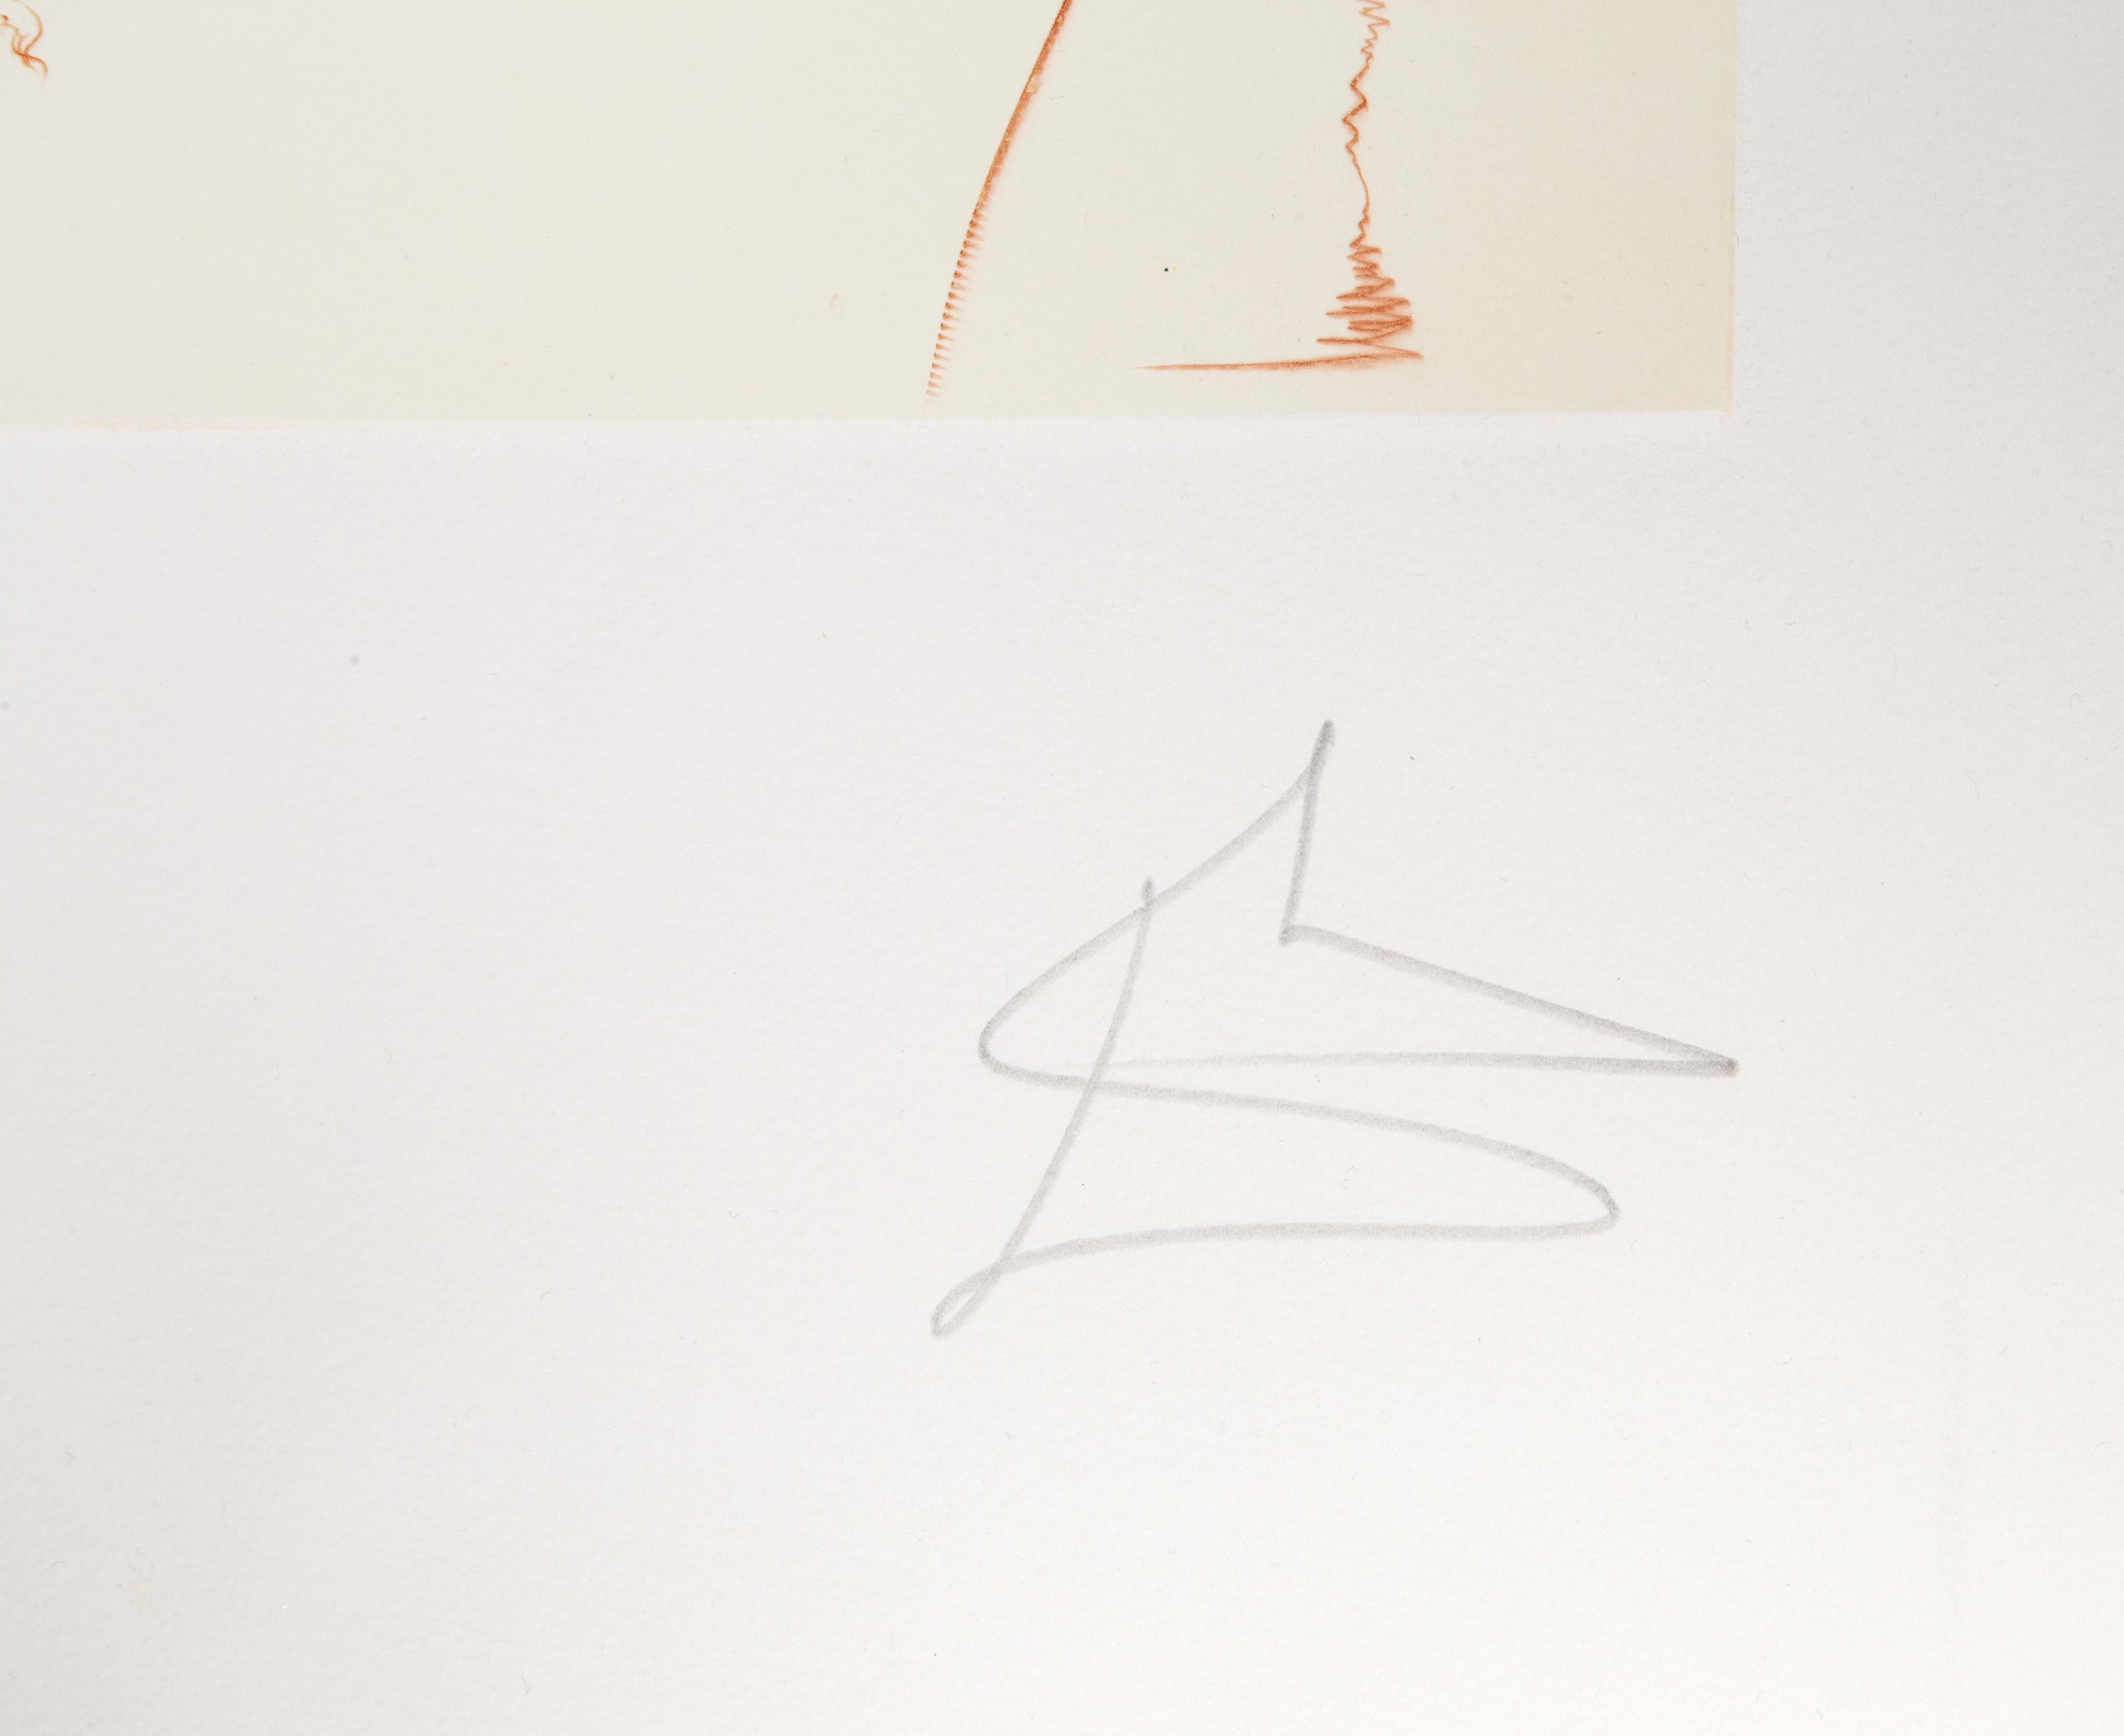 Lithographie et gravure sur papier Arches d'après le portfolio Les cycles de la vie de Salvador Dali, réalisé en 1977. Il a été imprimé par Forte et publié par Duall Graphics pour DALART. Il est référencé dans Field comme 79-1-B.

L'identité de